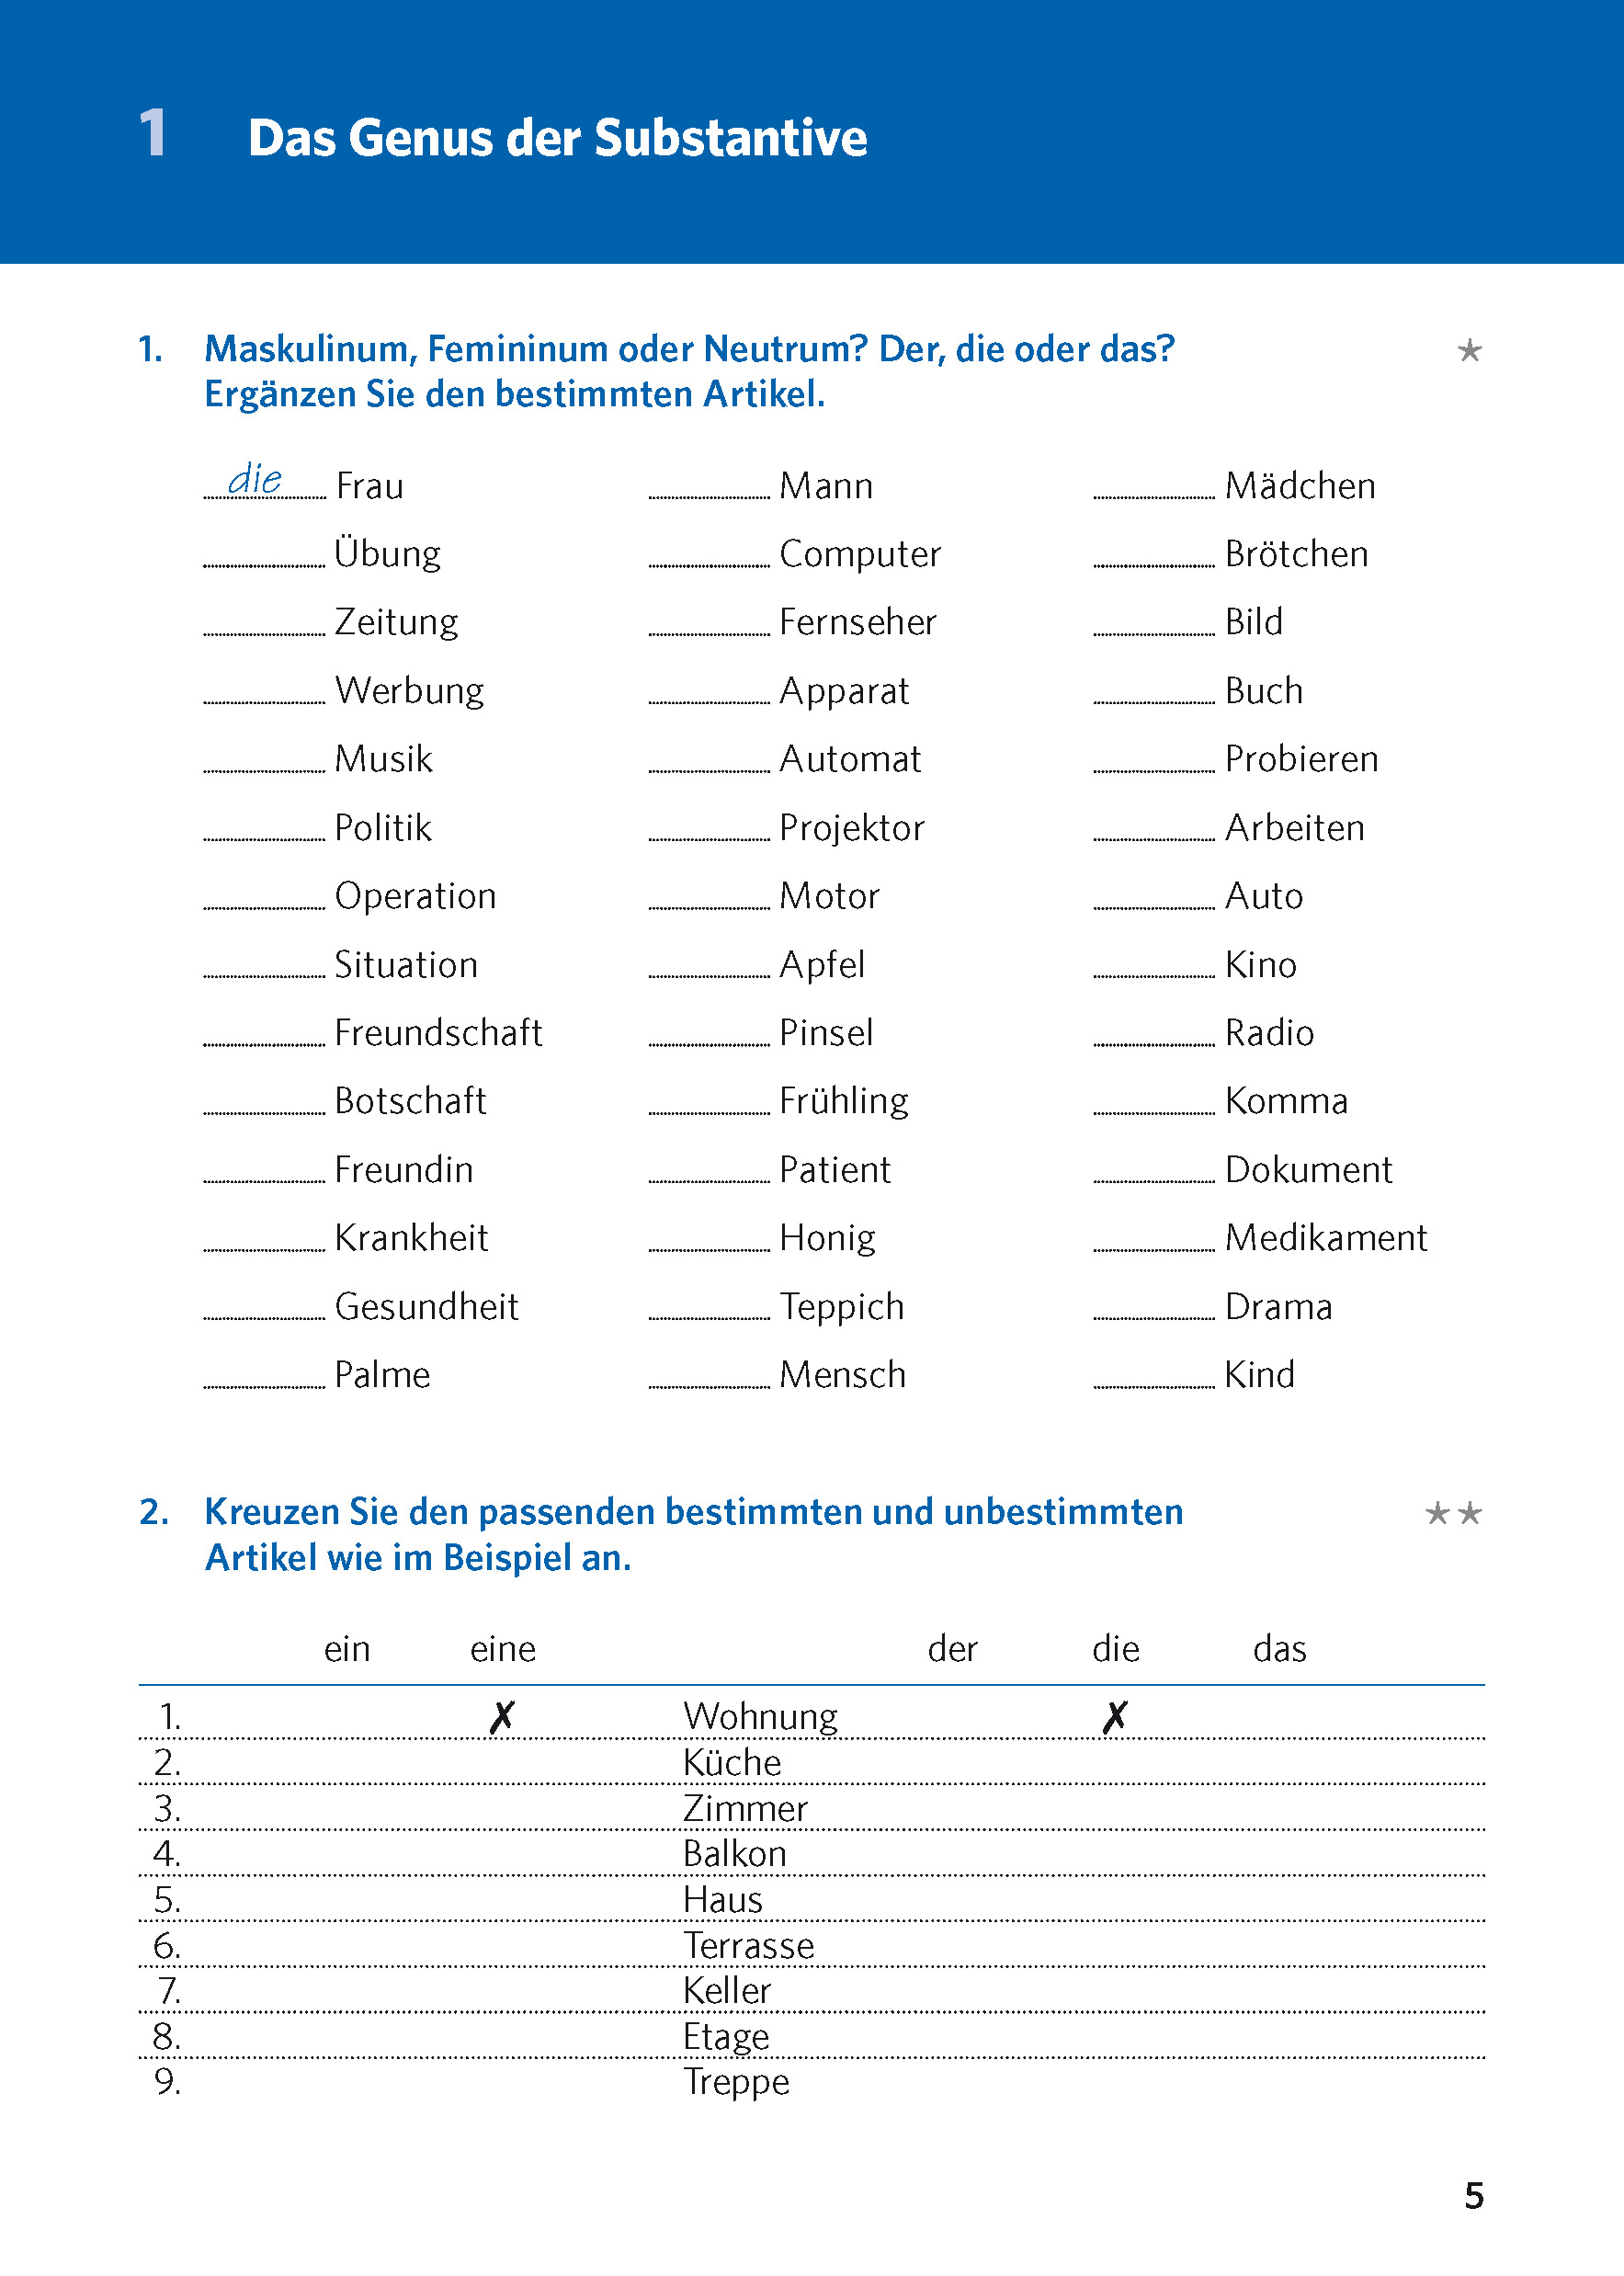 Langenscheidt Grammatiktraining Deutsch als Fremdsprache